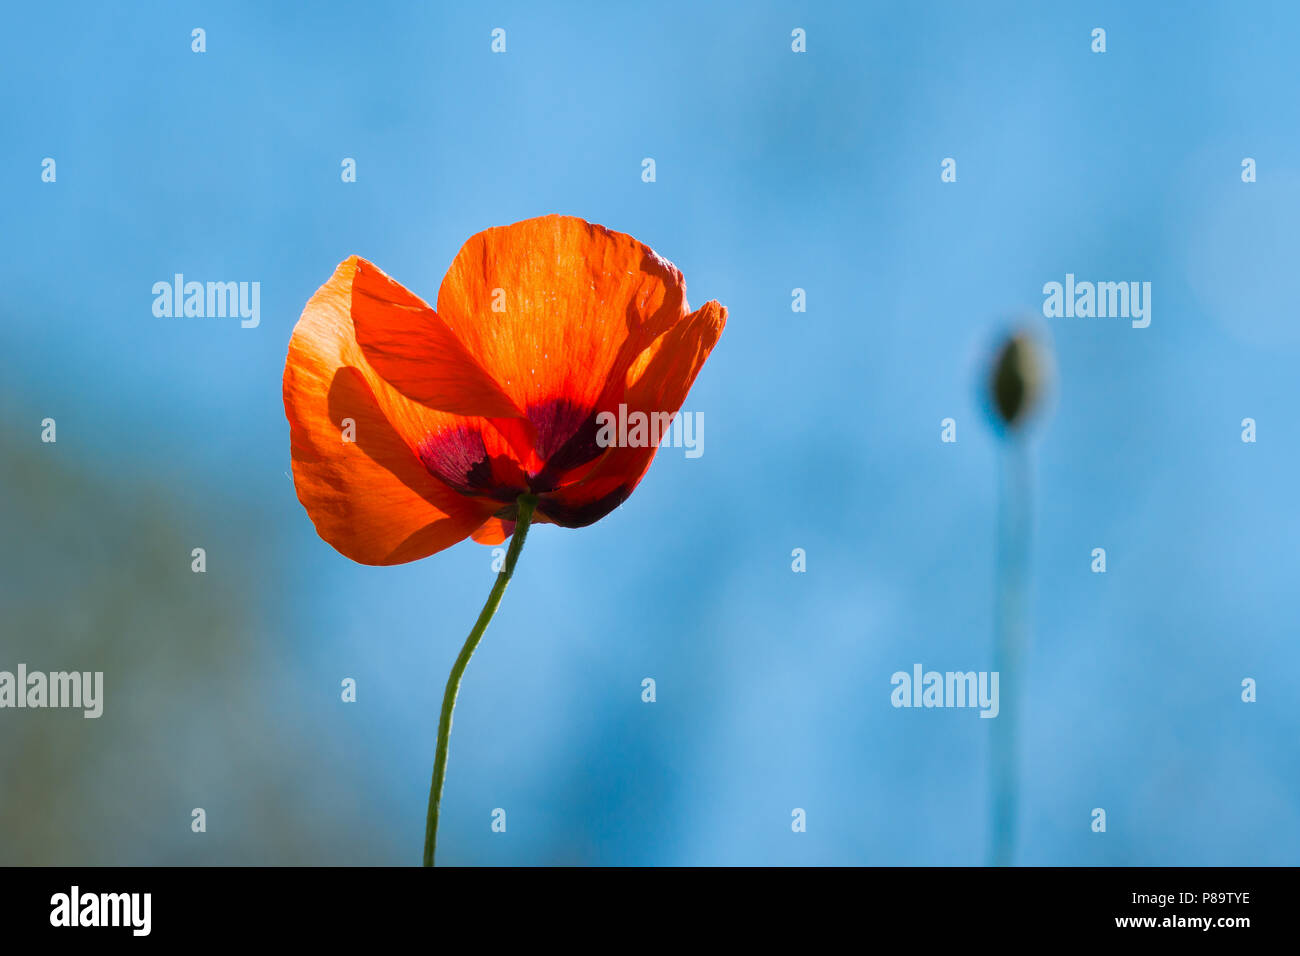 Single Poppy Flower against Vibrant Blue Sky, Tight Stock Photo